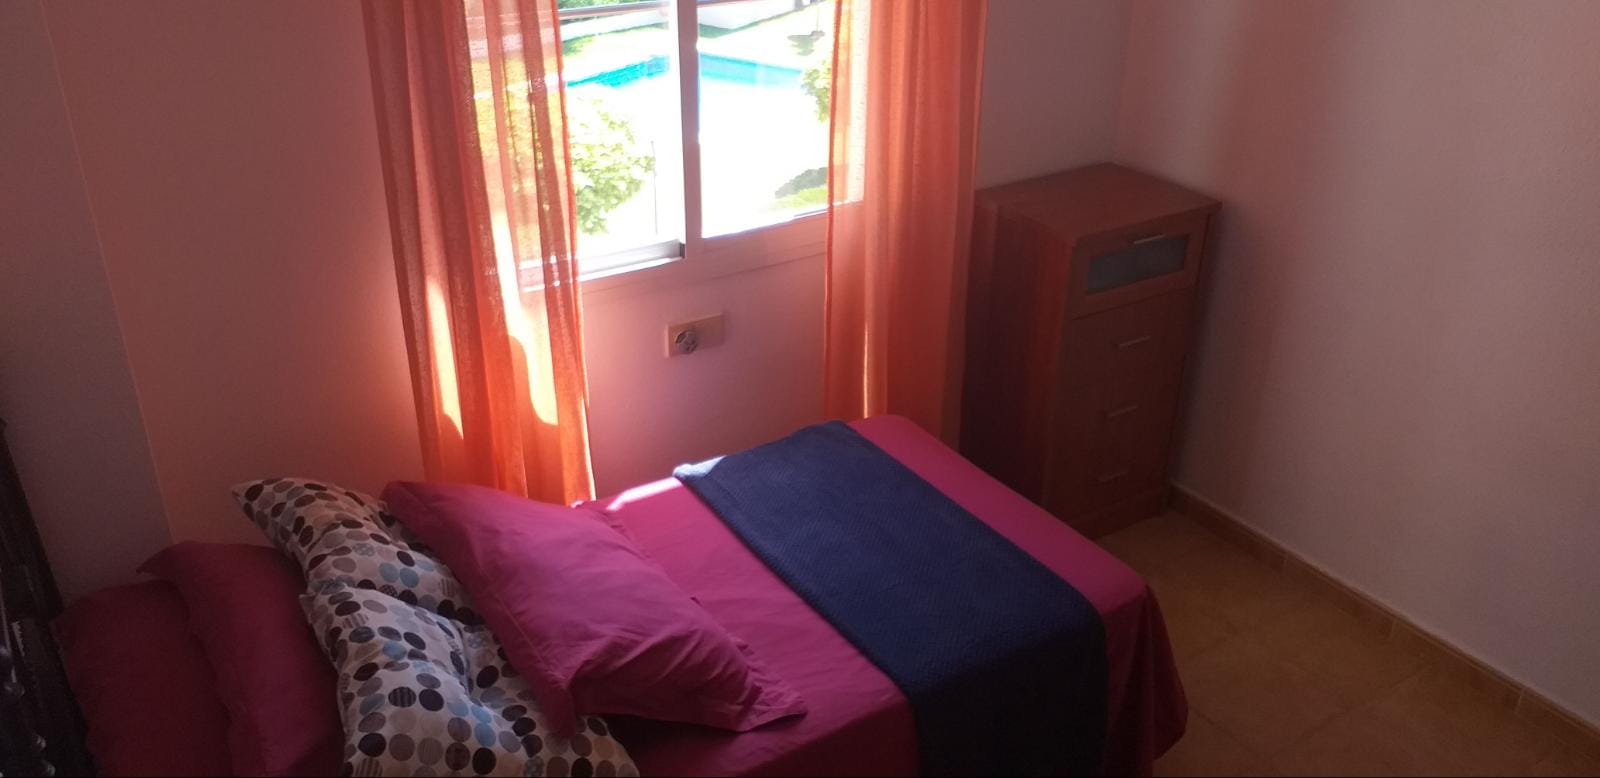 Ático de 3 dormitorios con vistas al mar en el centro de Estepona - mibgroup.es